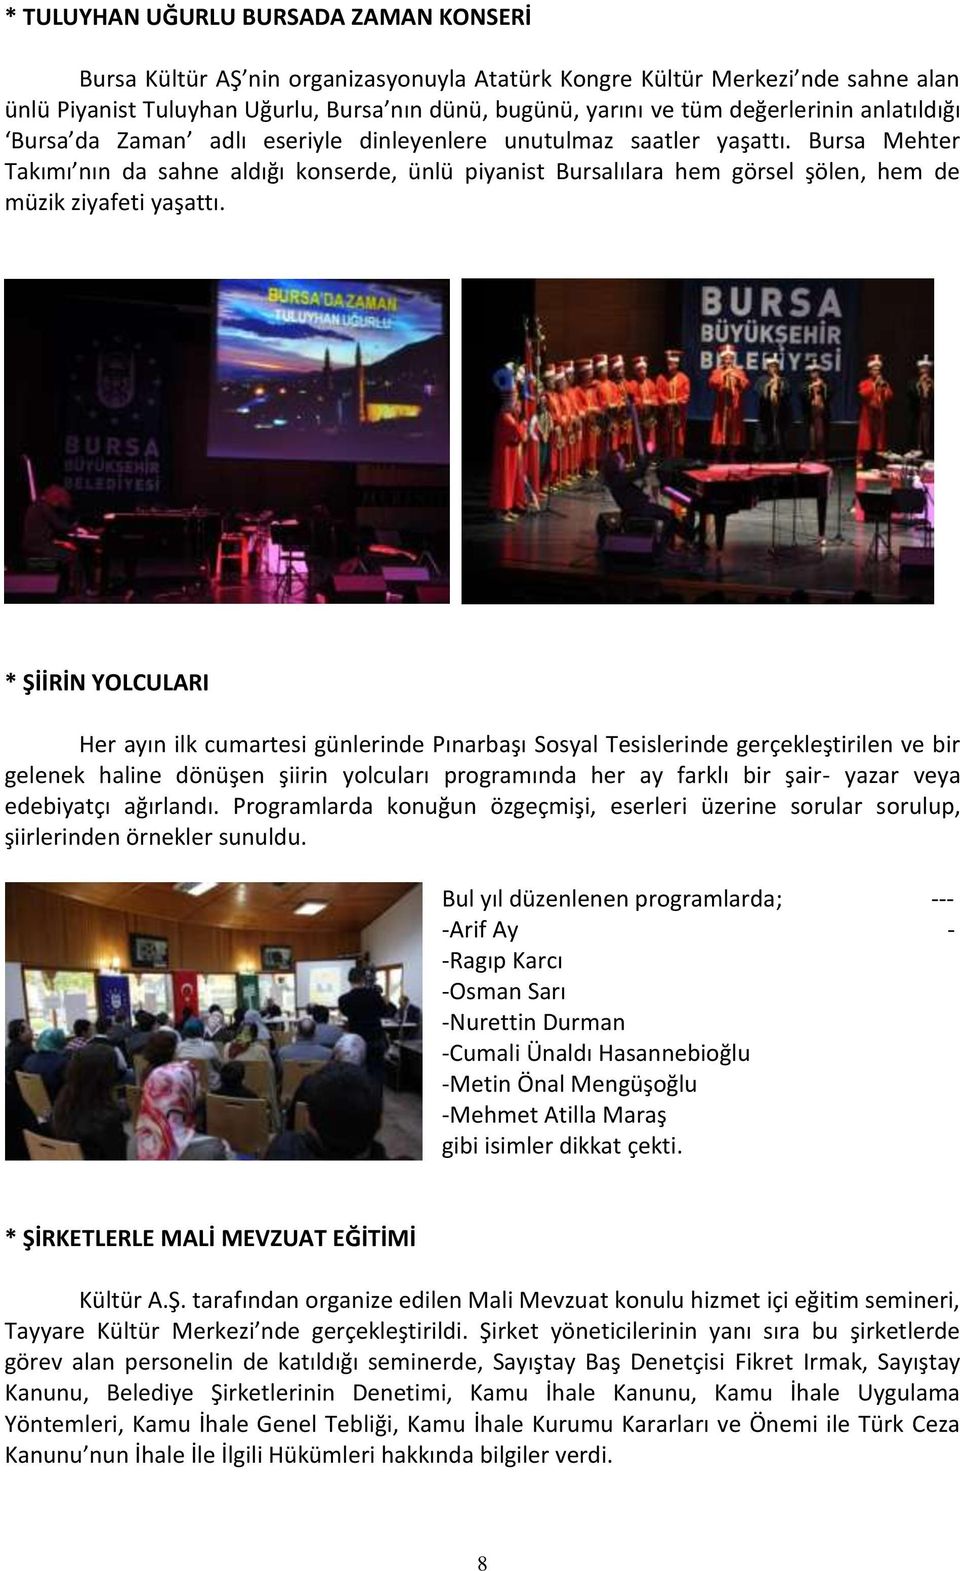 Bursa Mehter Takımı nın da sahne aldığı konserde, ünlü piyanist Bursalılara hem görsel şölen, hem de müzik ziyafeti yaşattı.